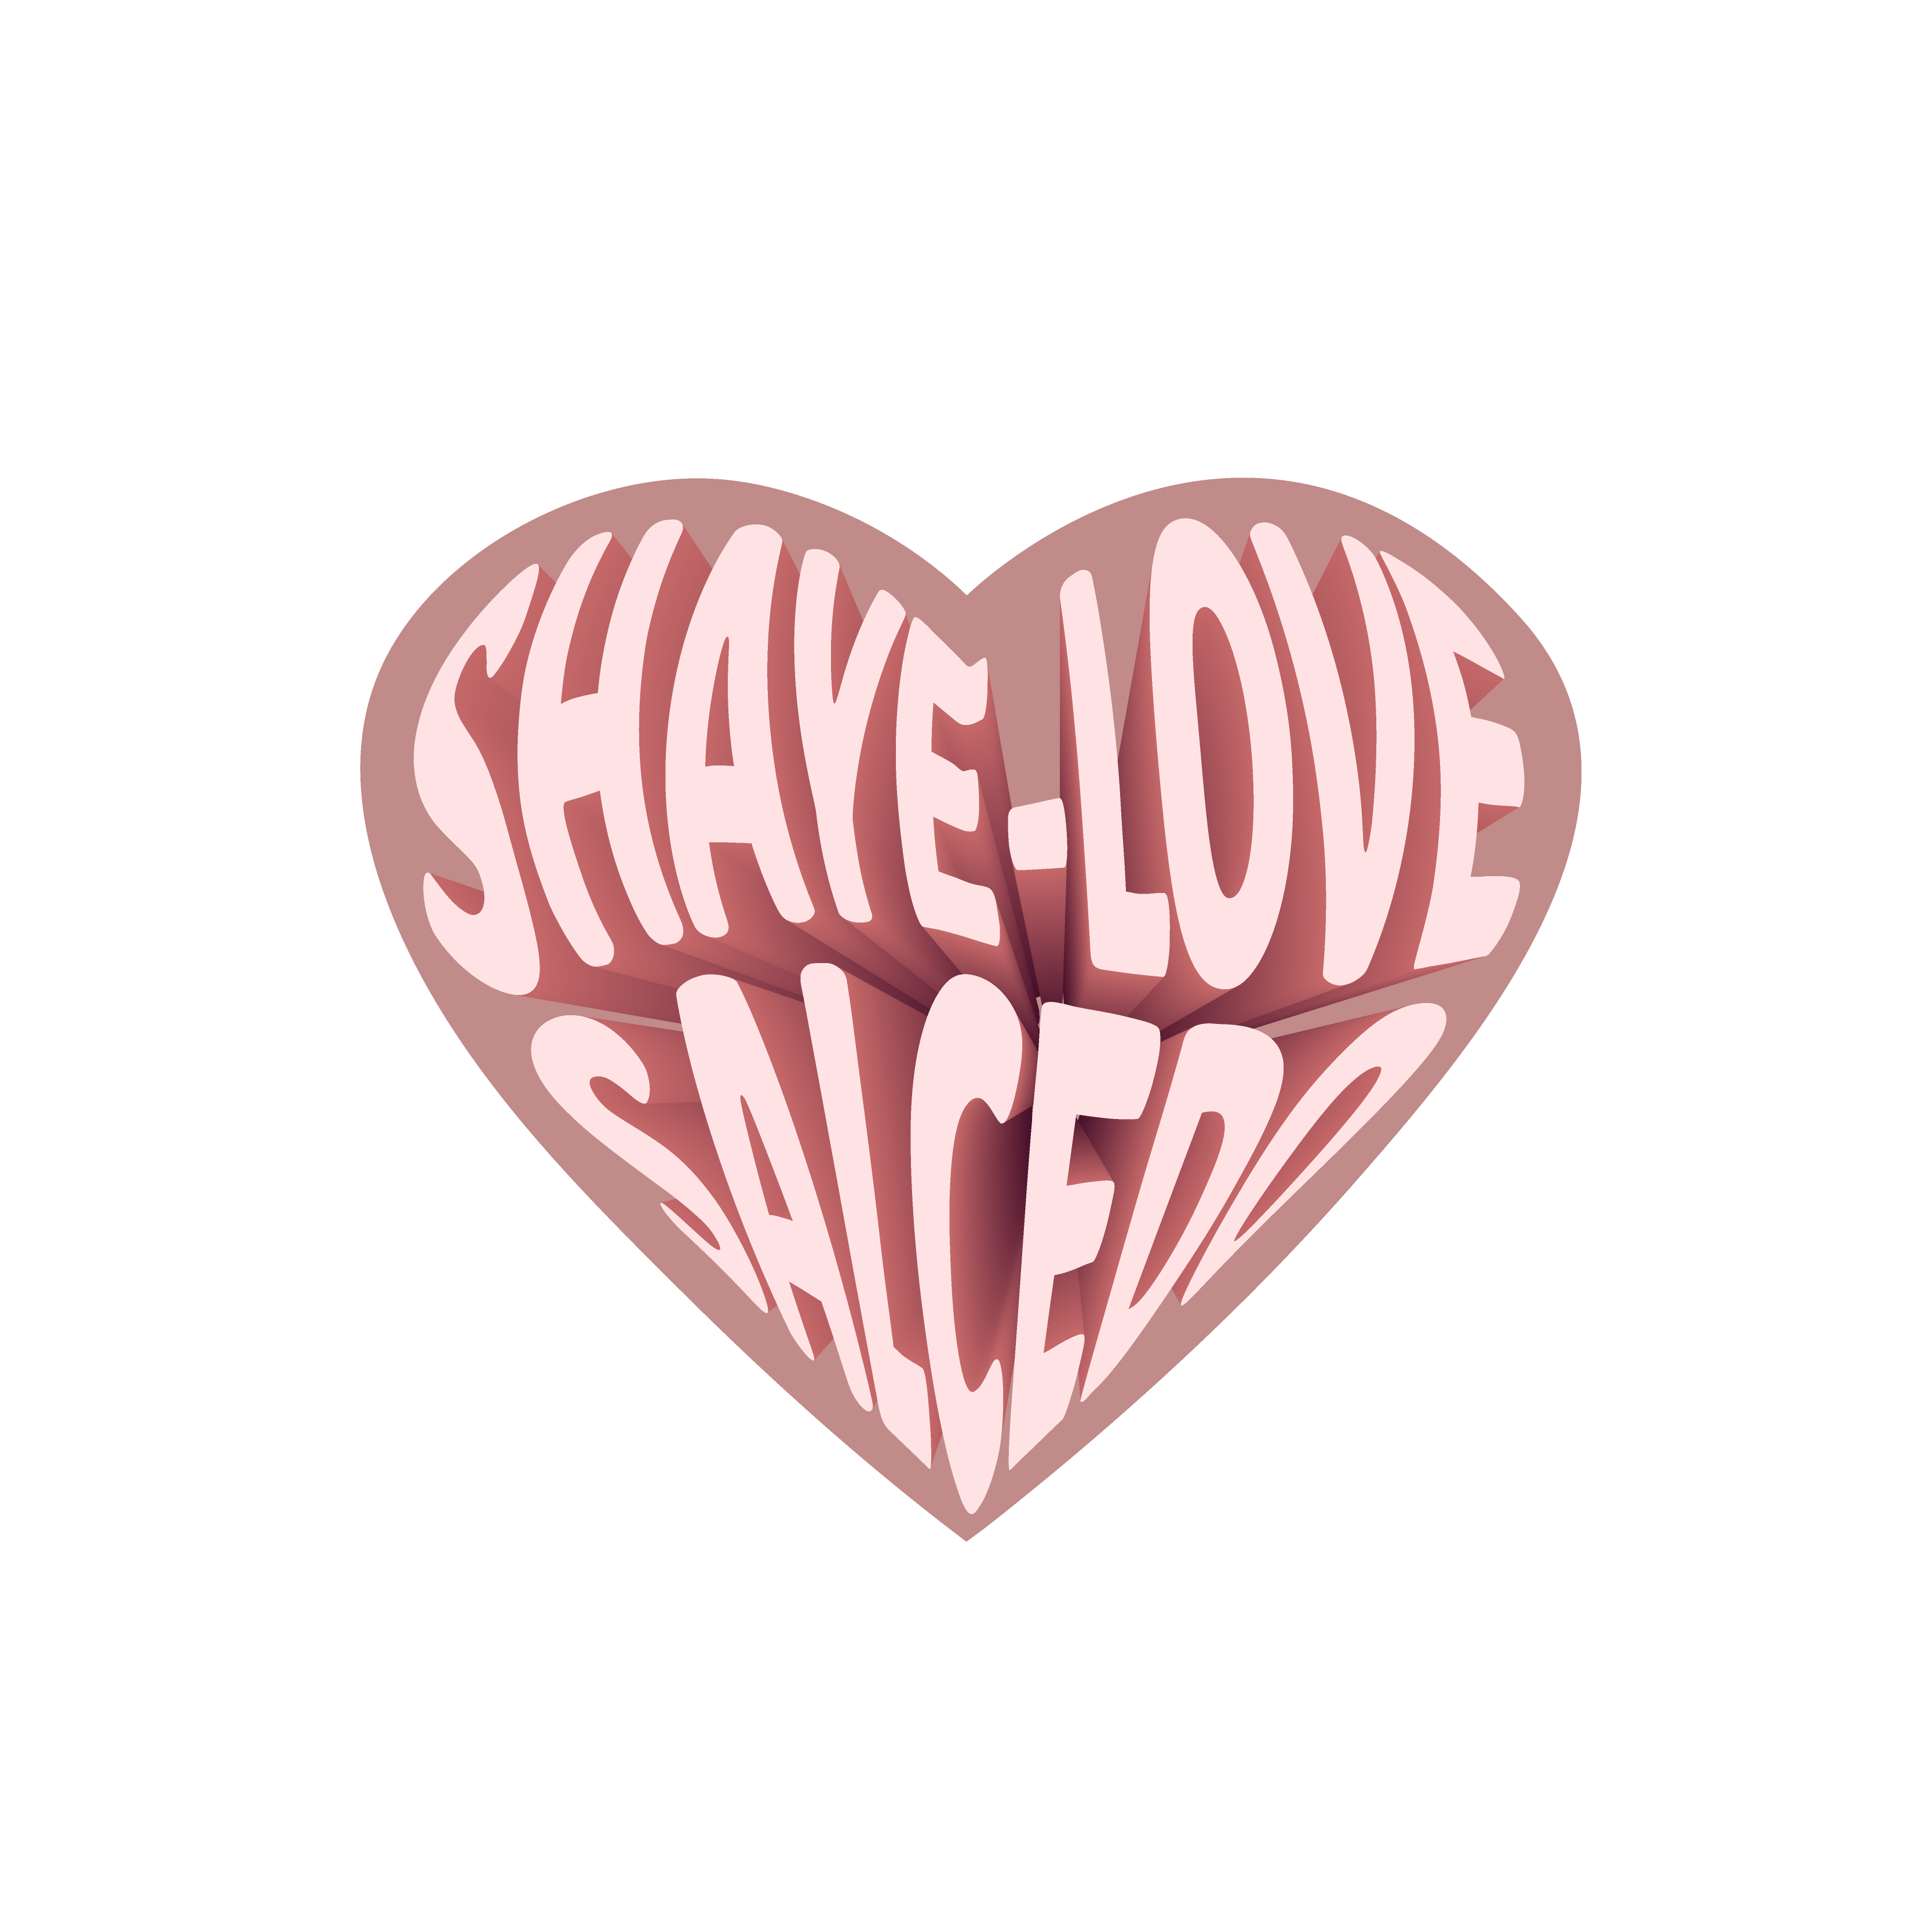 Shaye-Love Salcedo